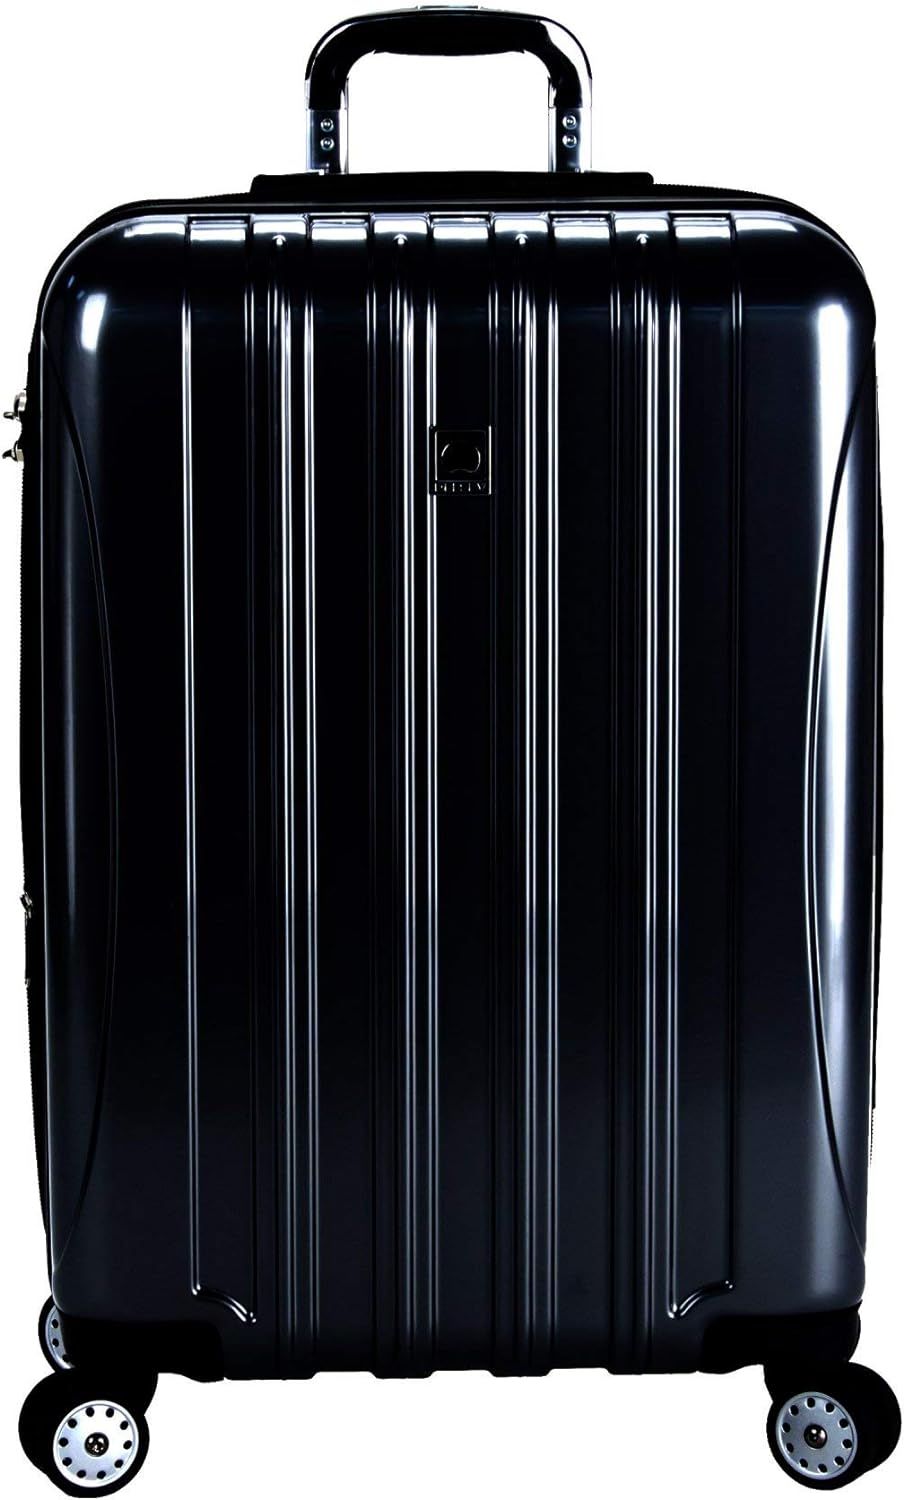 DELSEY Paris Helium Aero Hardside Expandable Luggage with Spinner Wheels, Black, Checked-Medium 2... | Amazon (US)